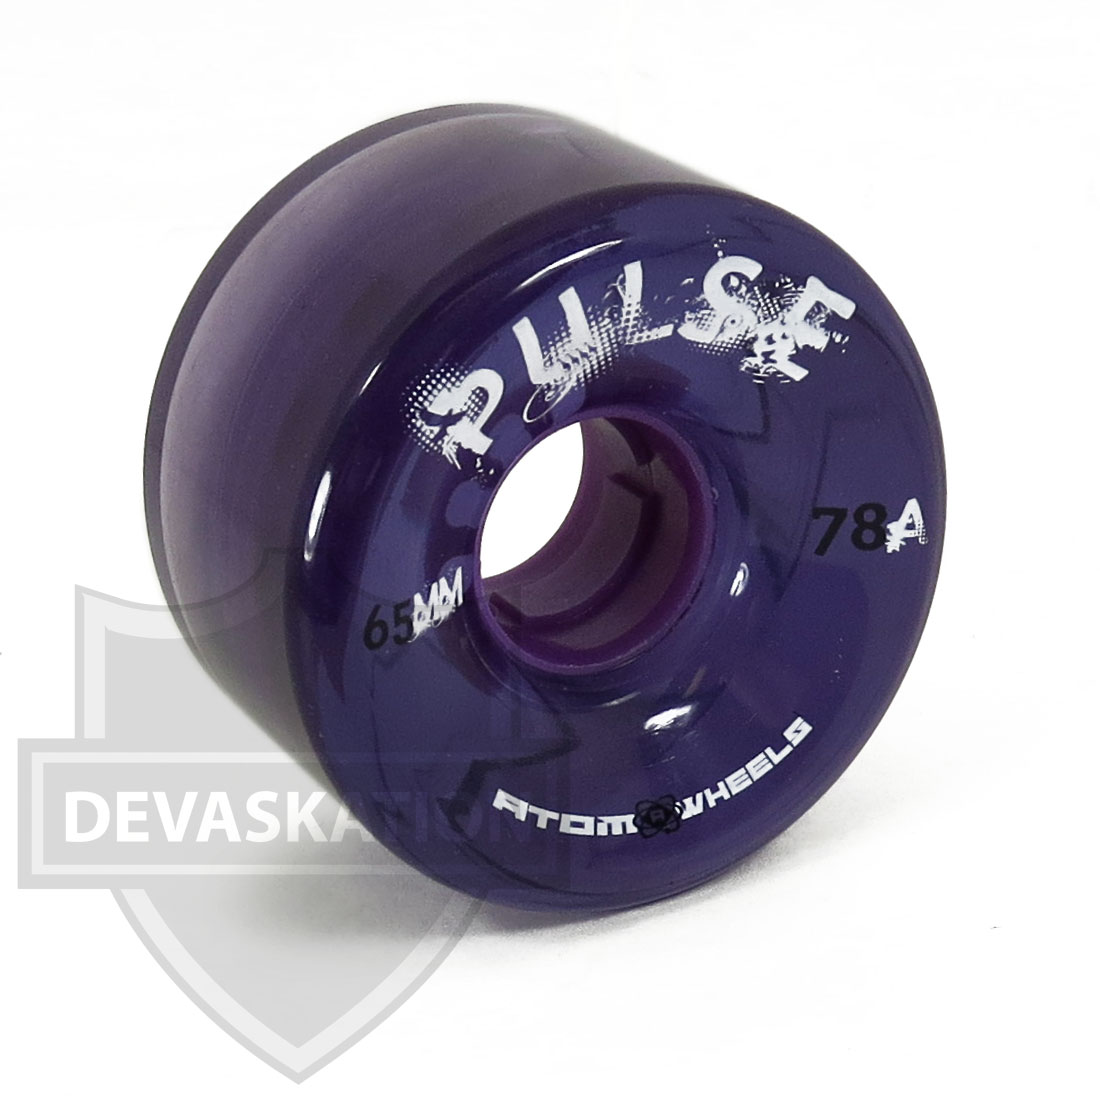 Skate Out Loud Bundle Bearings ABEC7 Purple Atom Pulse Wheels Tool 